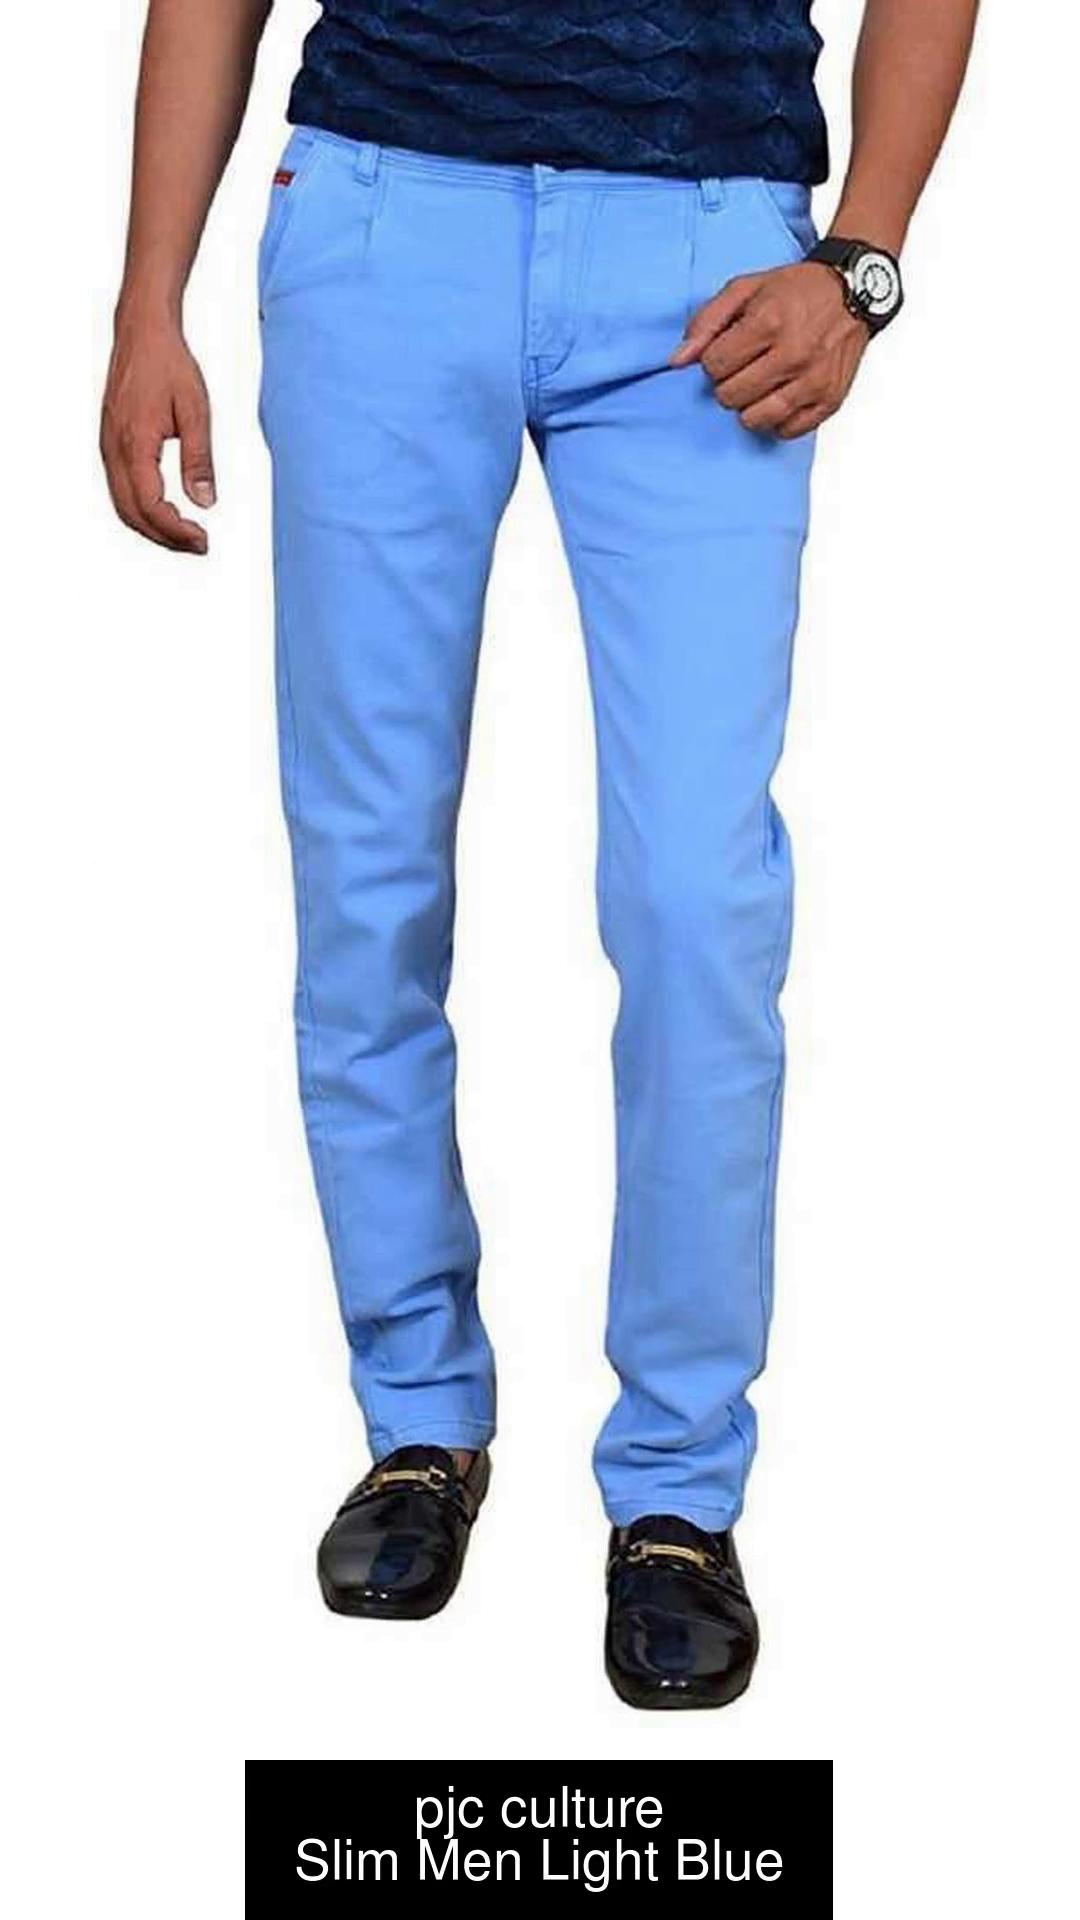 pjc culture Slim Men Light Blue Jeans - Buy pjc culture Slim Men Light Blue  Jeans Online at Best Prices in India